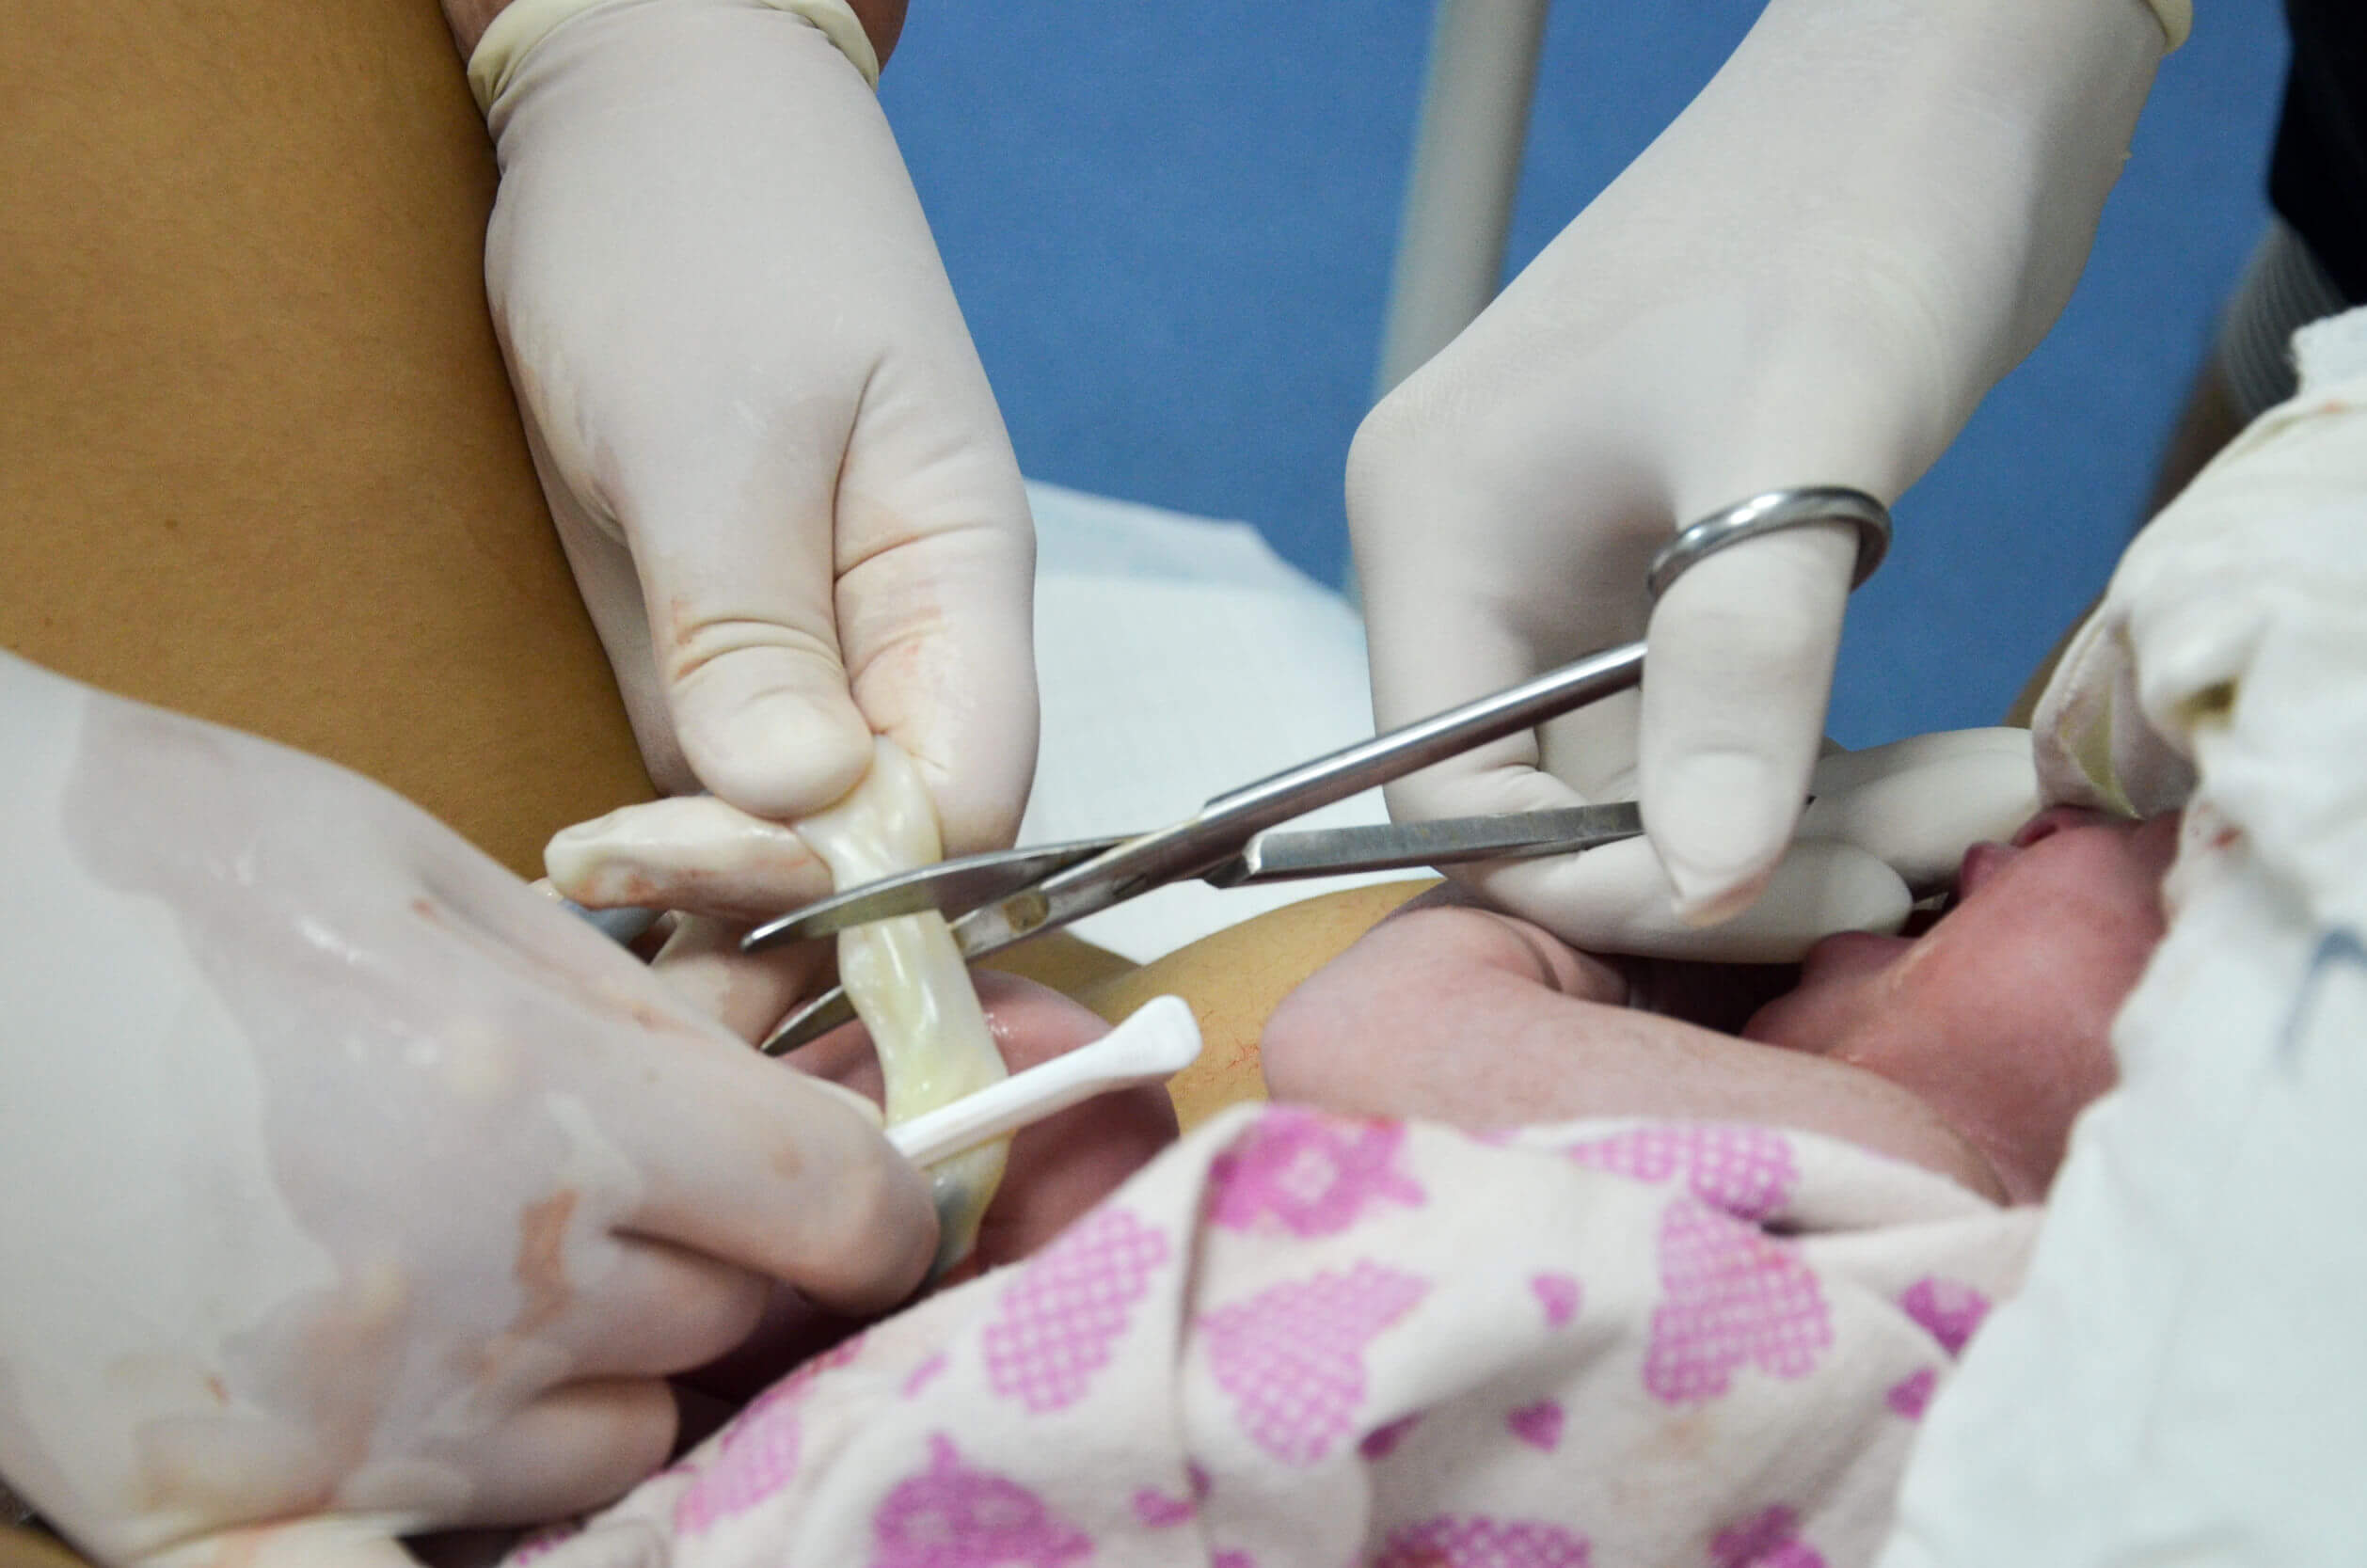 Läkare skär av navelsträngen på en nyfödd.